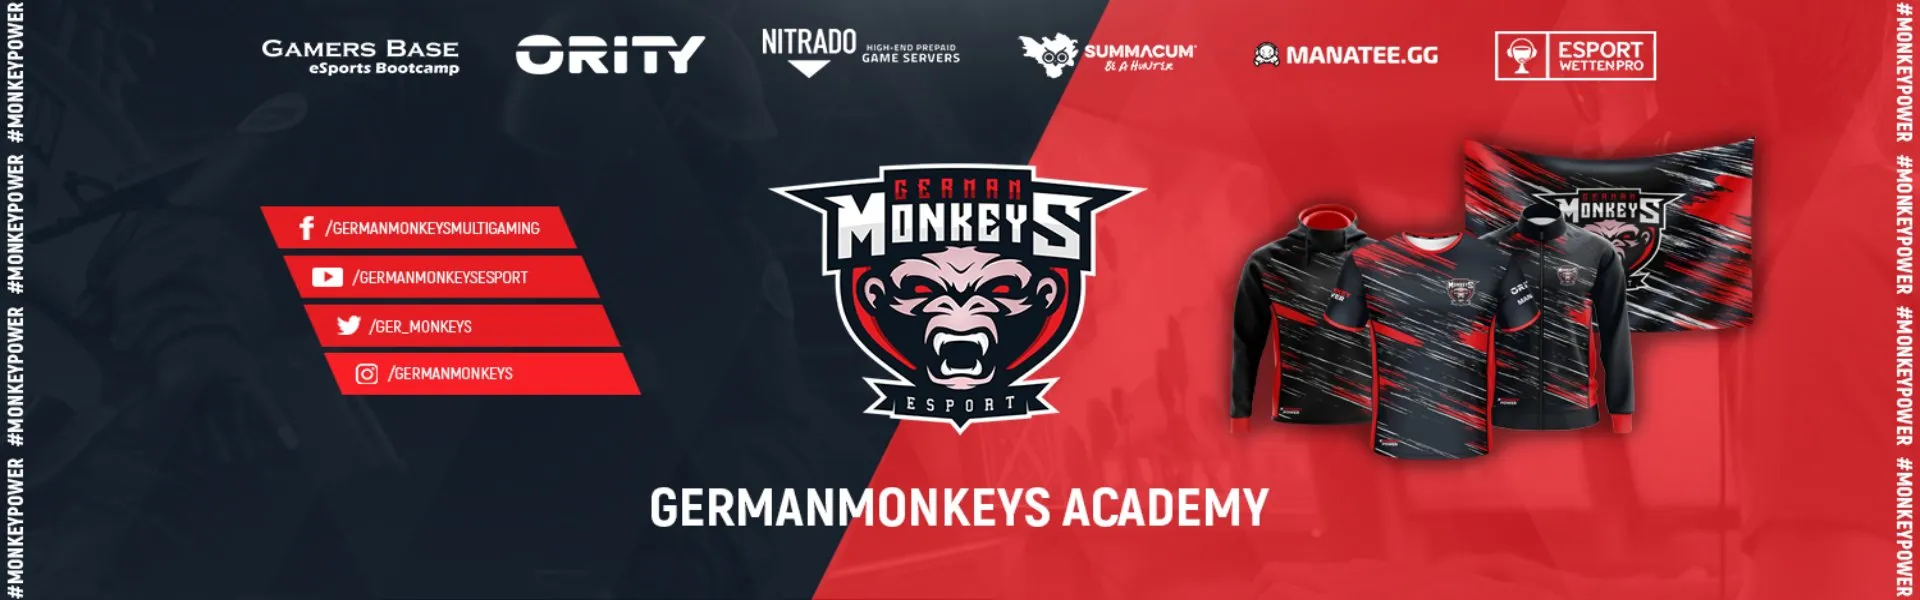 GermanMonkeys Academy banner